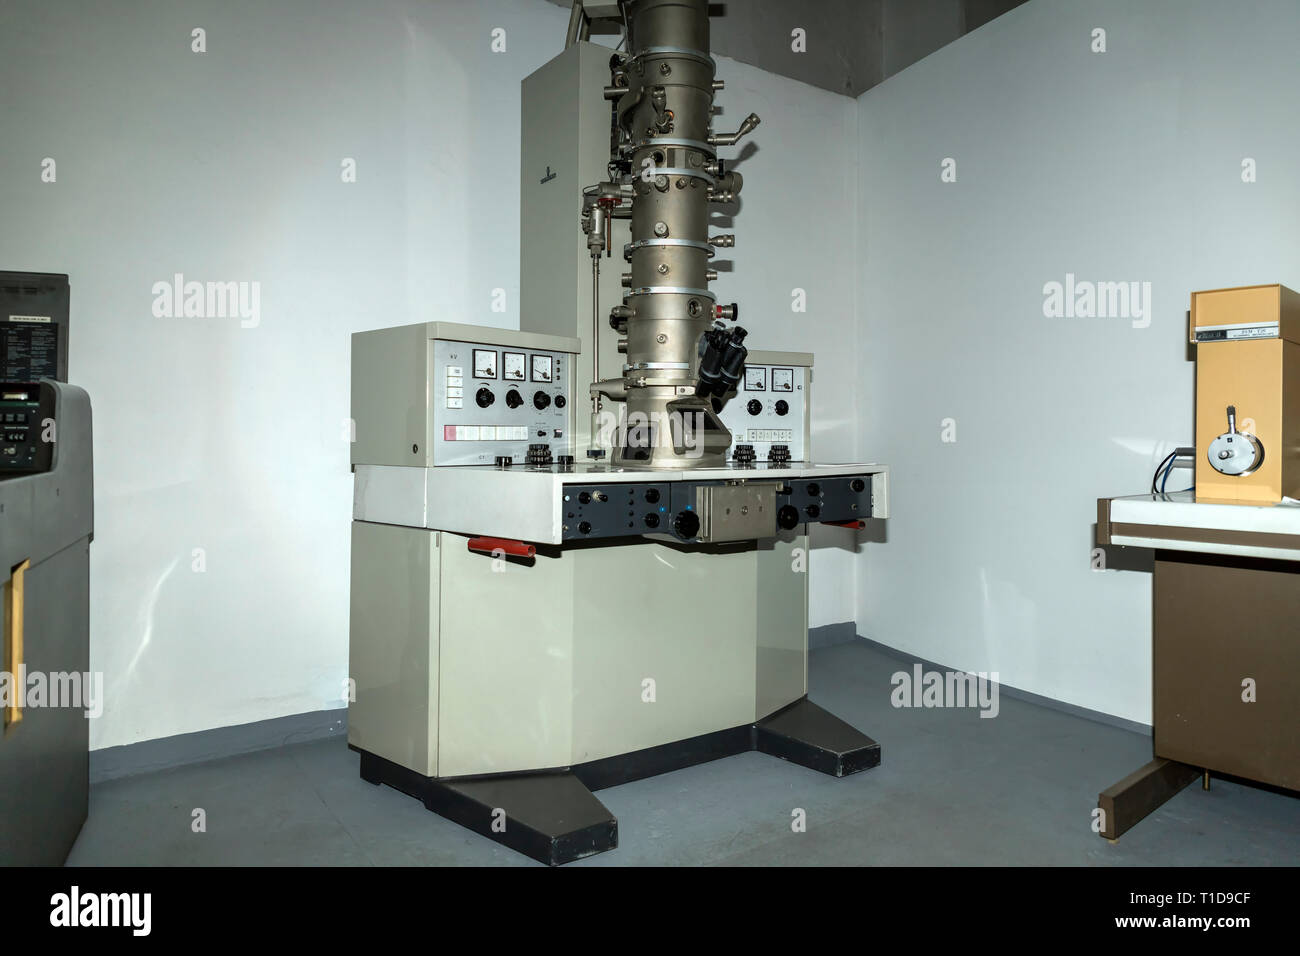 Belgrade, Serbie, mars 2019 - Microscope électronique à transmission faite par Siemens en 1970 exposée dans le musée de la science et de la technologie Banque D'Images